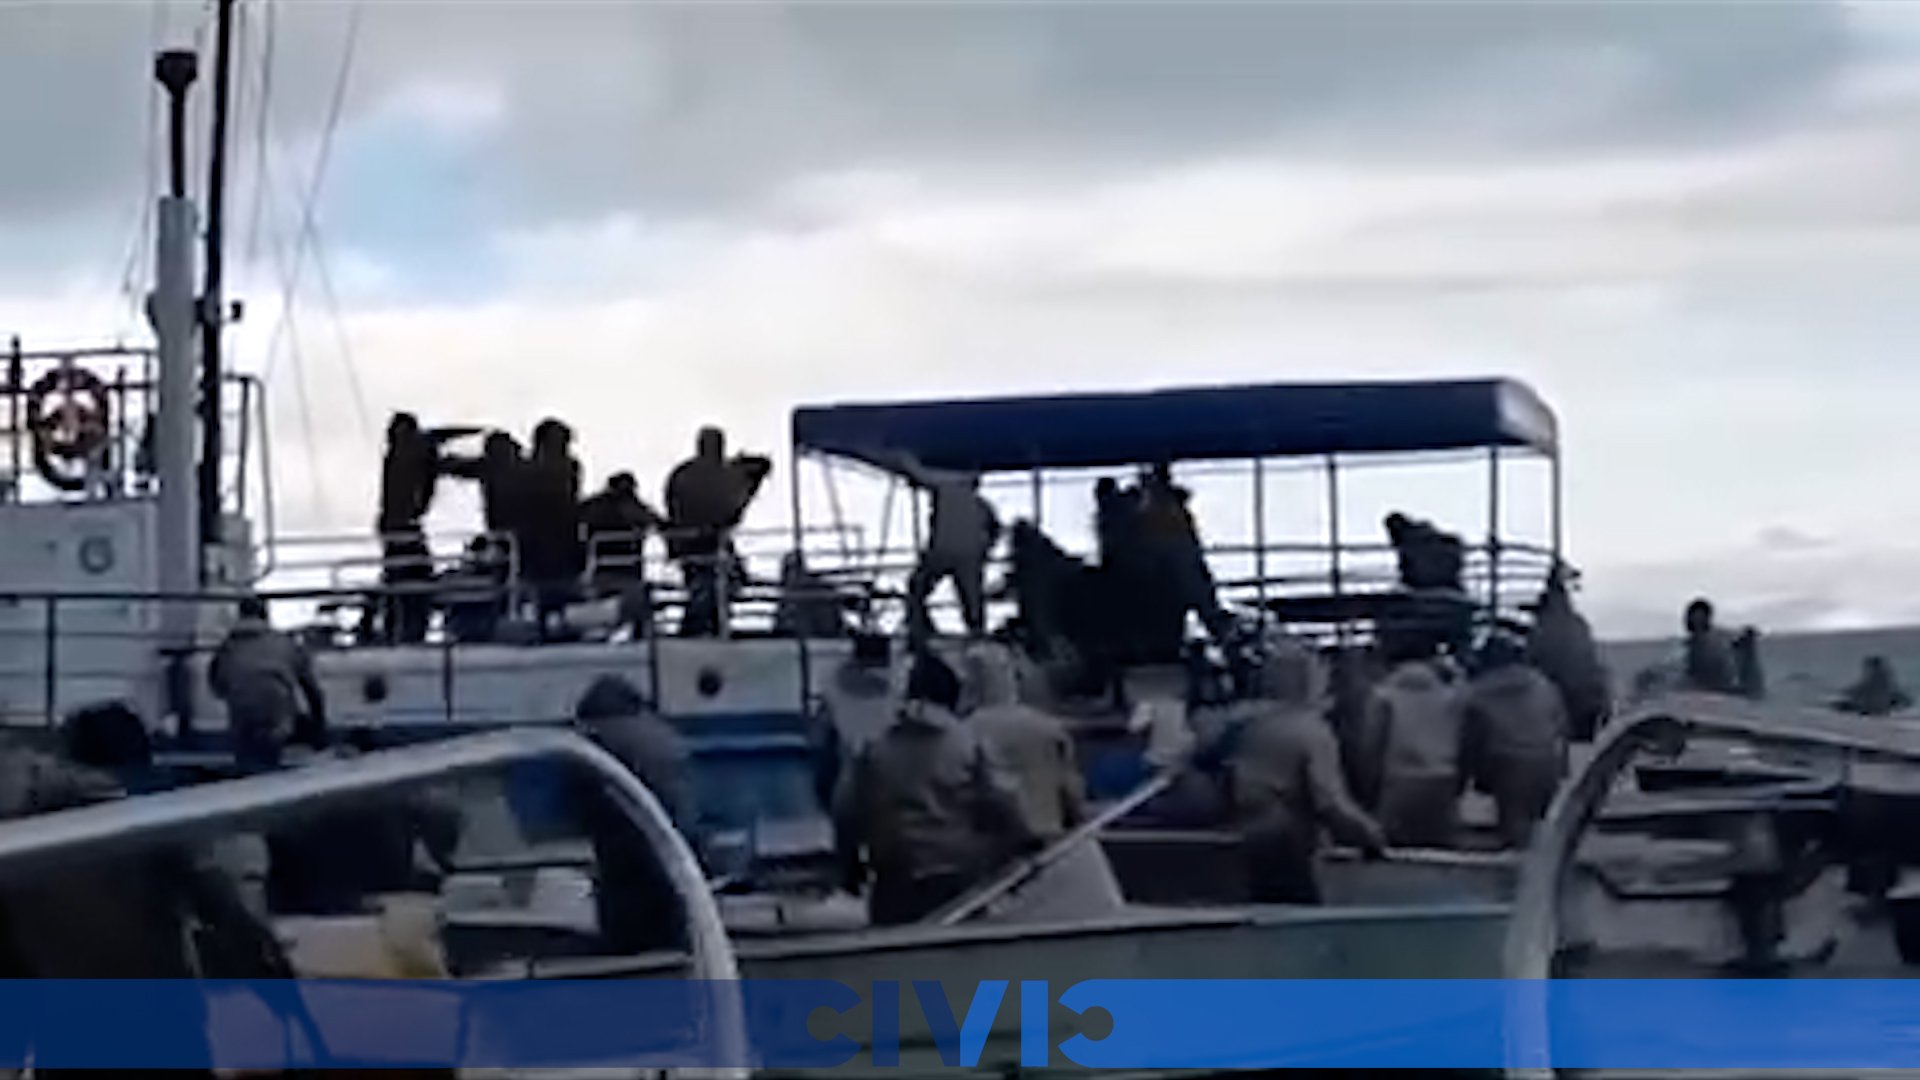 Դիմակավորված ձկնորսների կողմից Սևան ազգային պարկի նավը գրոհելու և աշխատակիցների ու ջրային պարեկների վրա հարձակվելու բացառիկ կադրերը